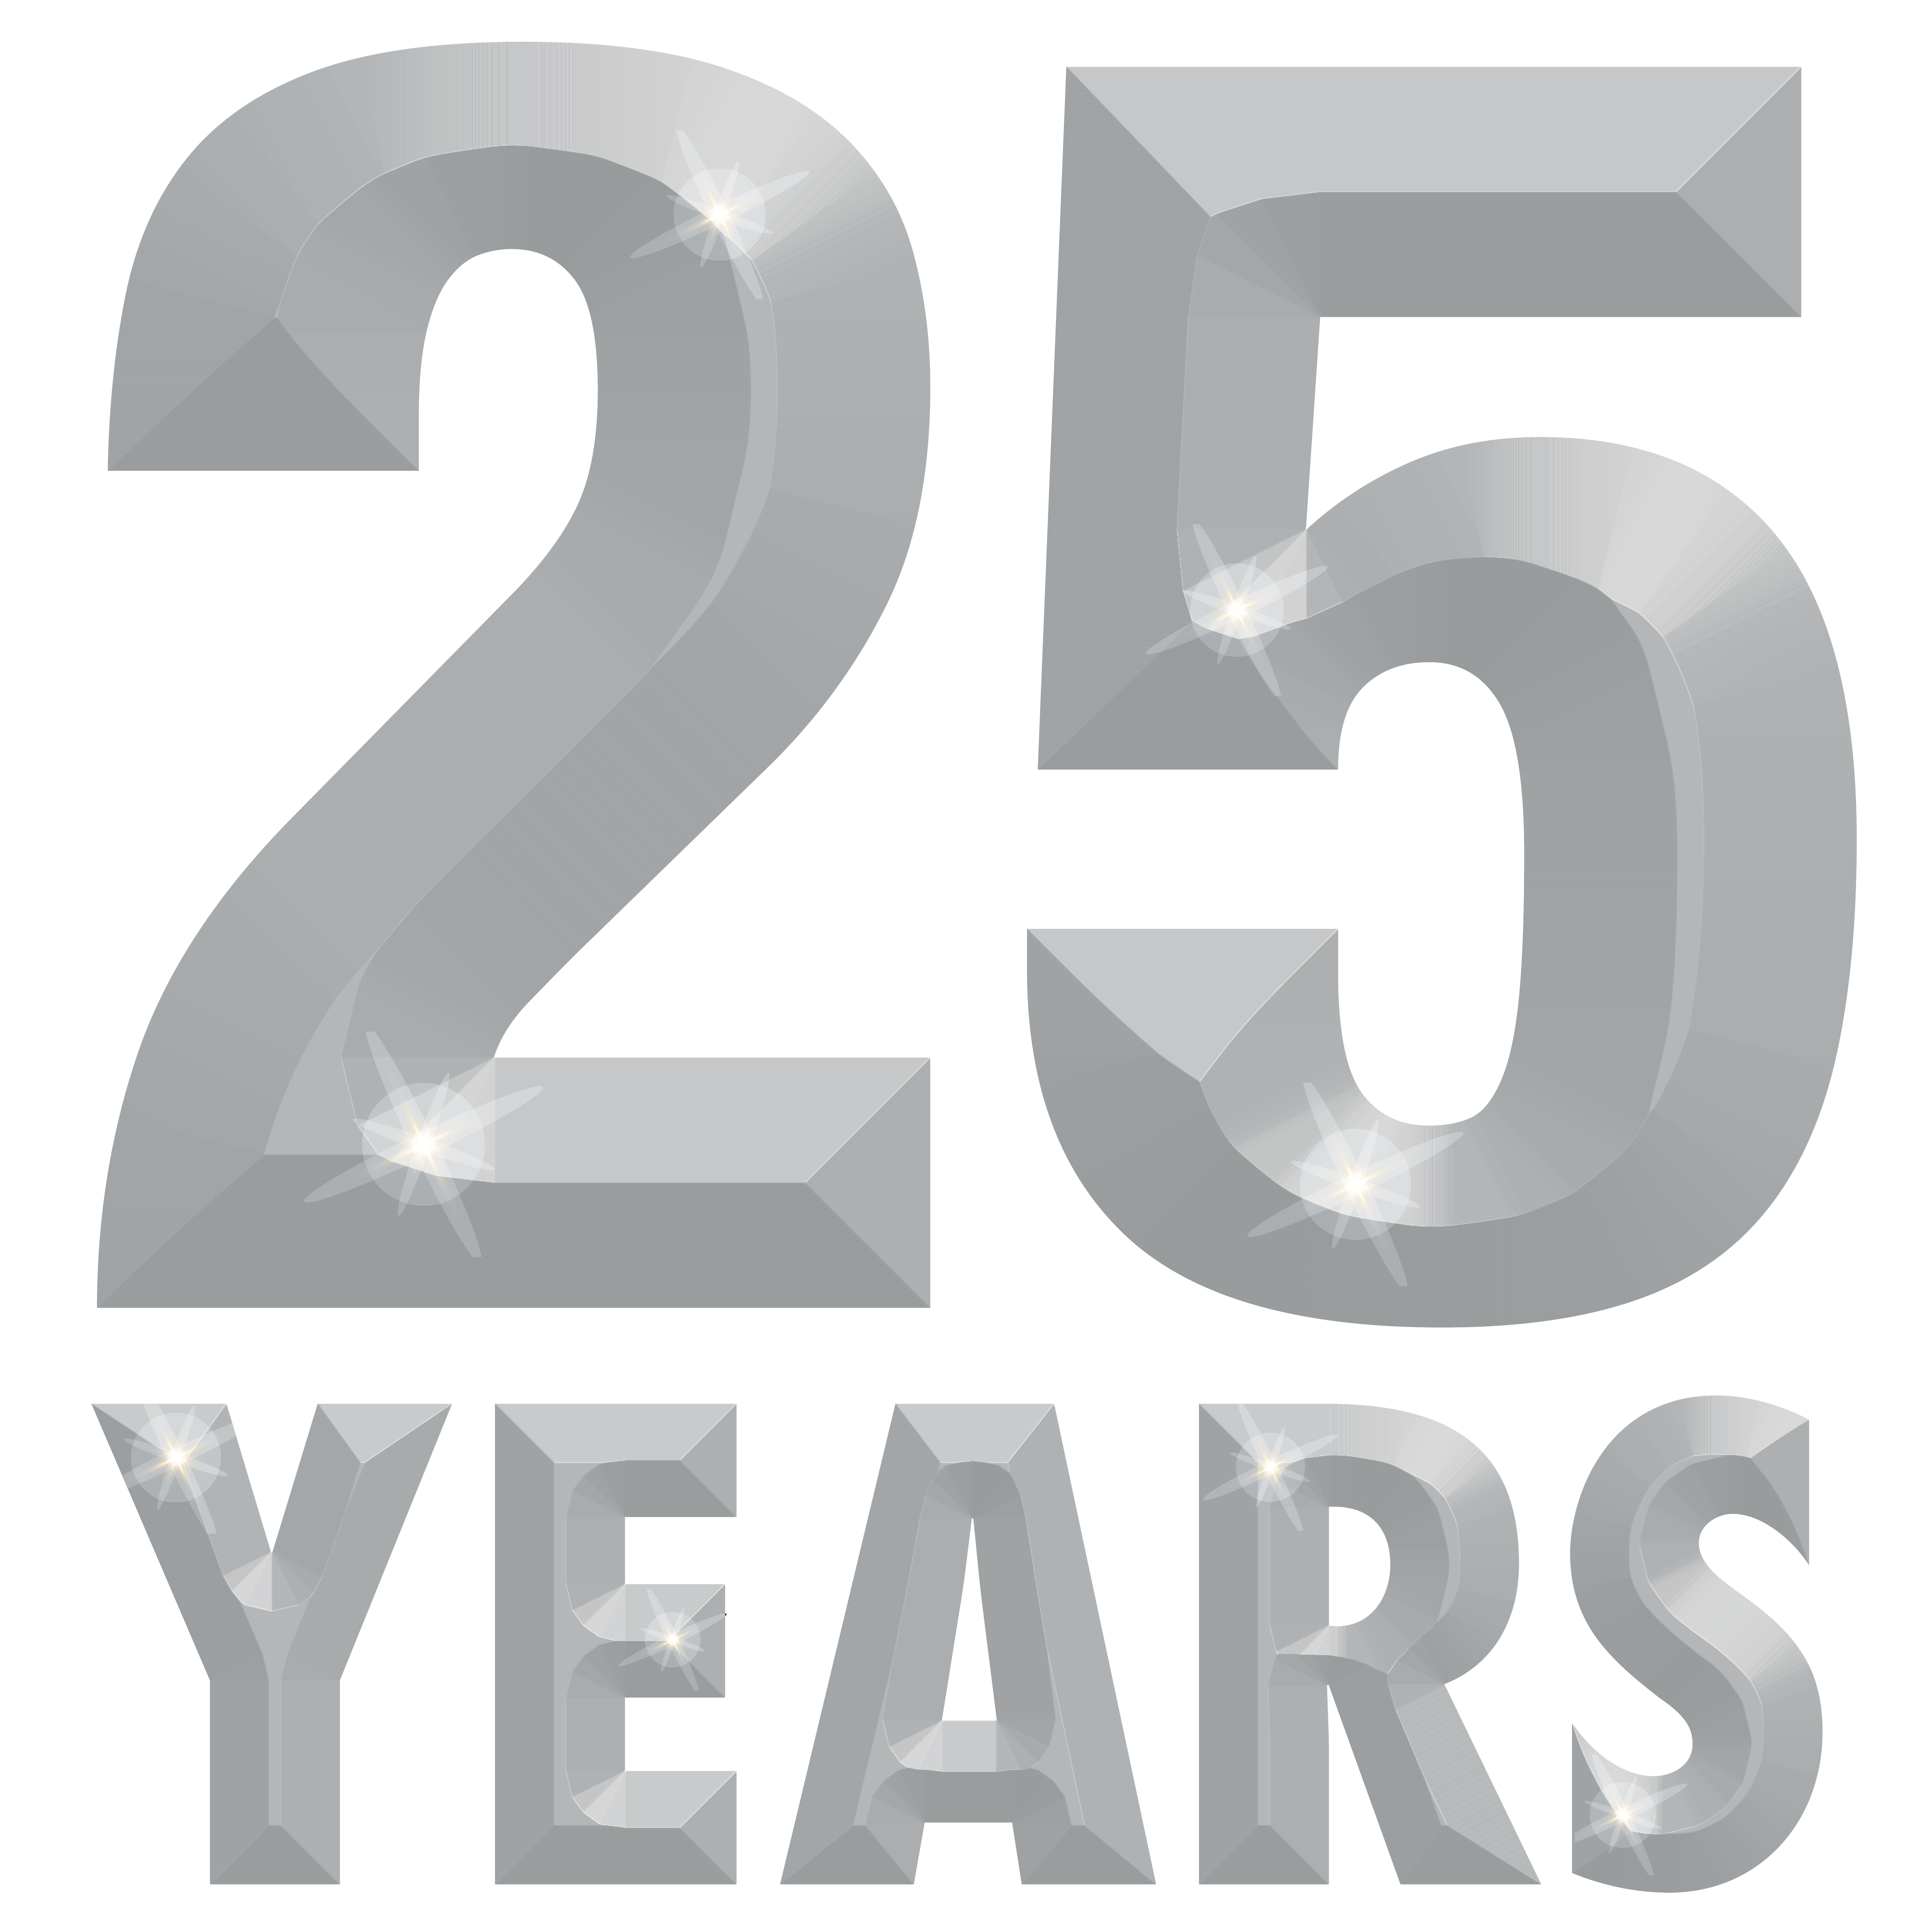 25 Year Anniversary